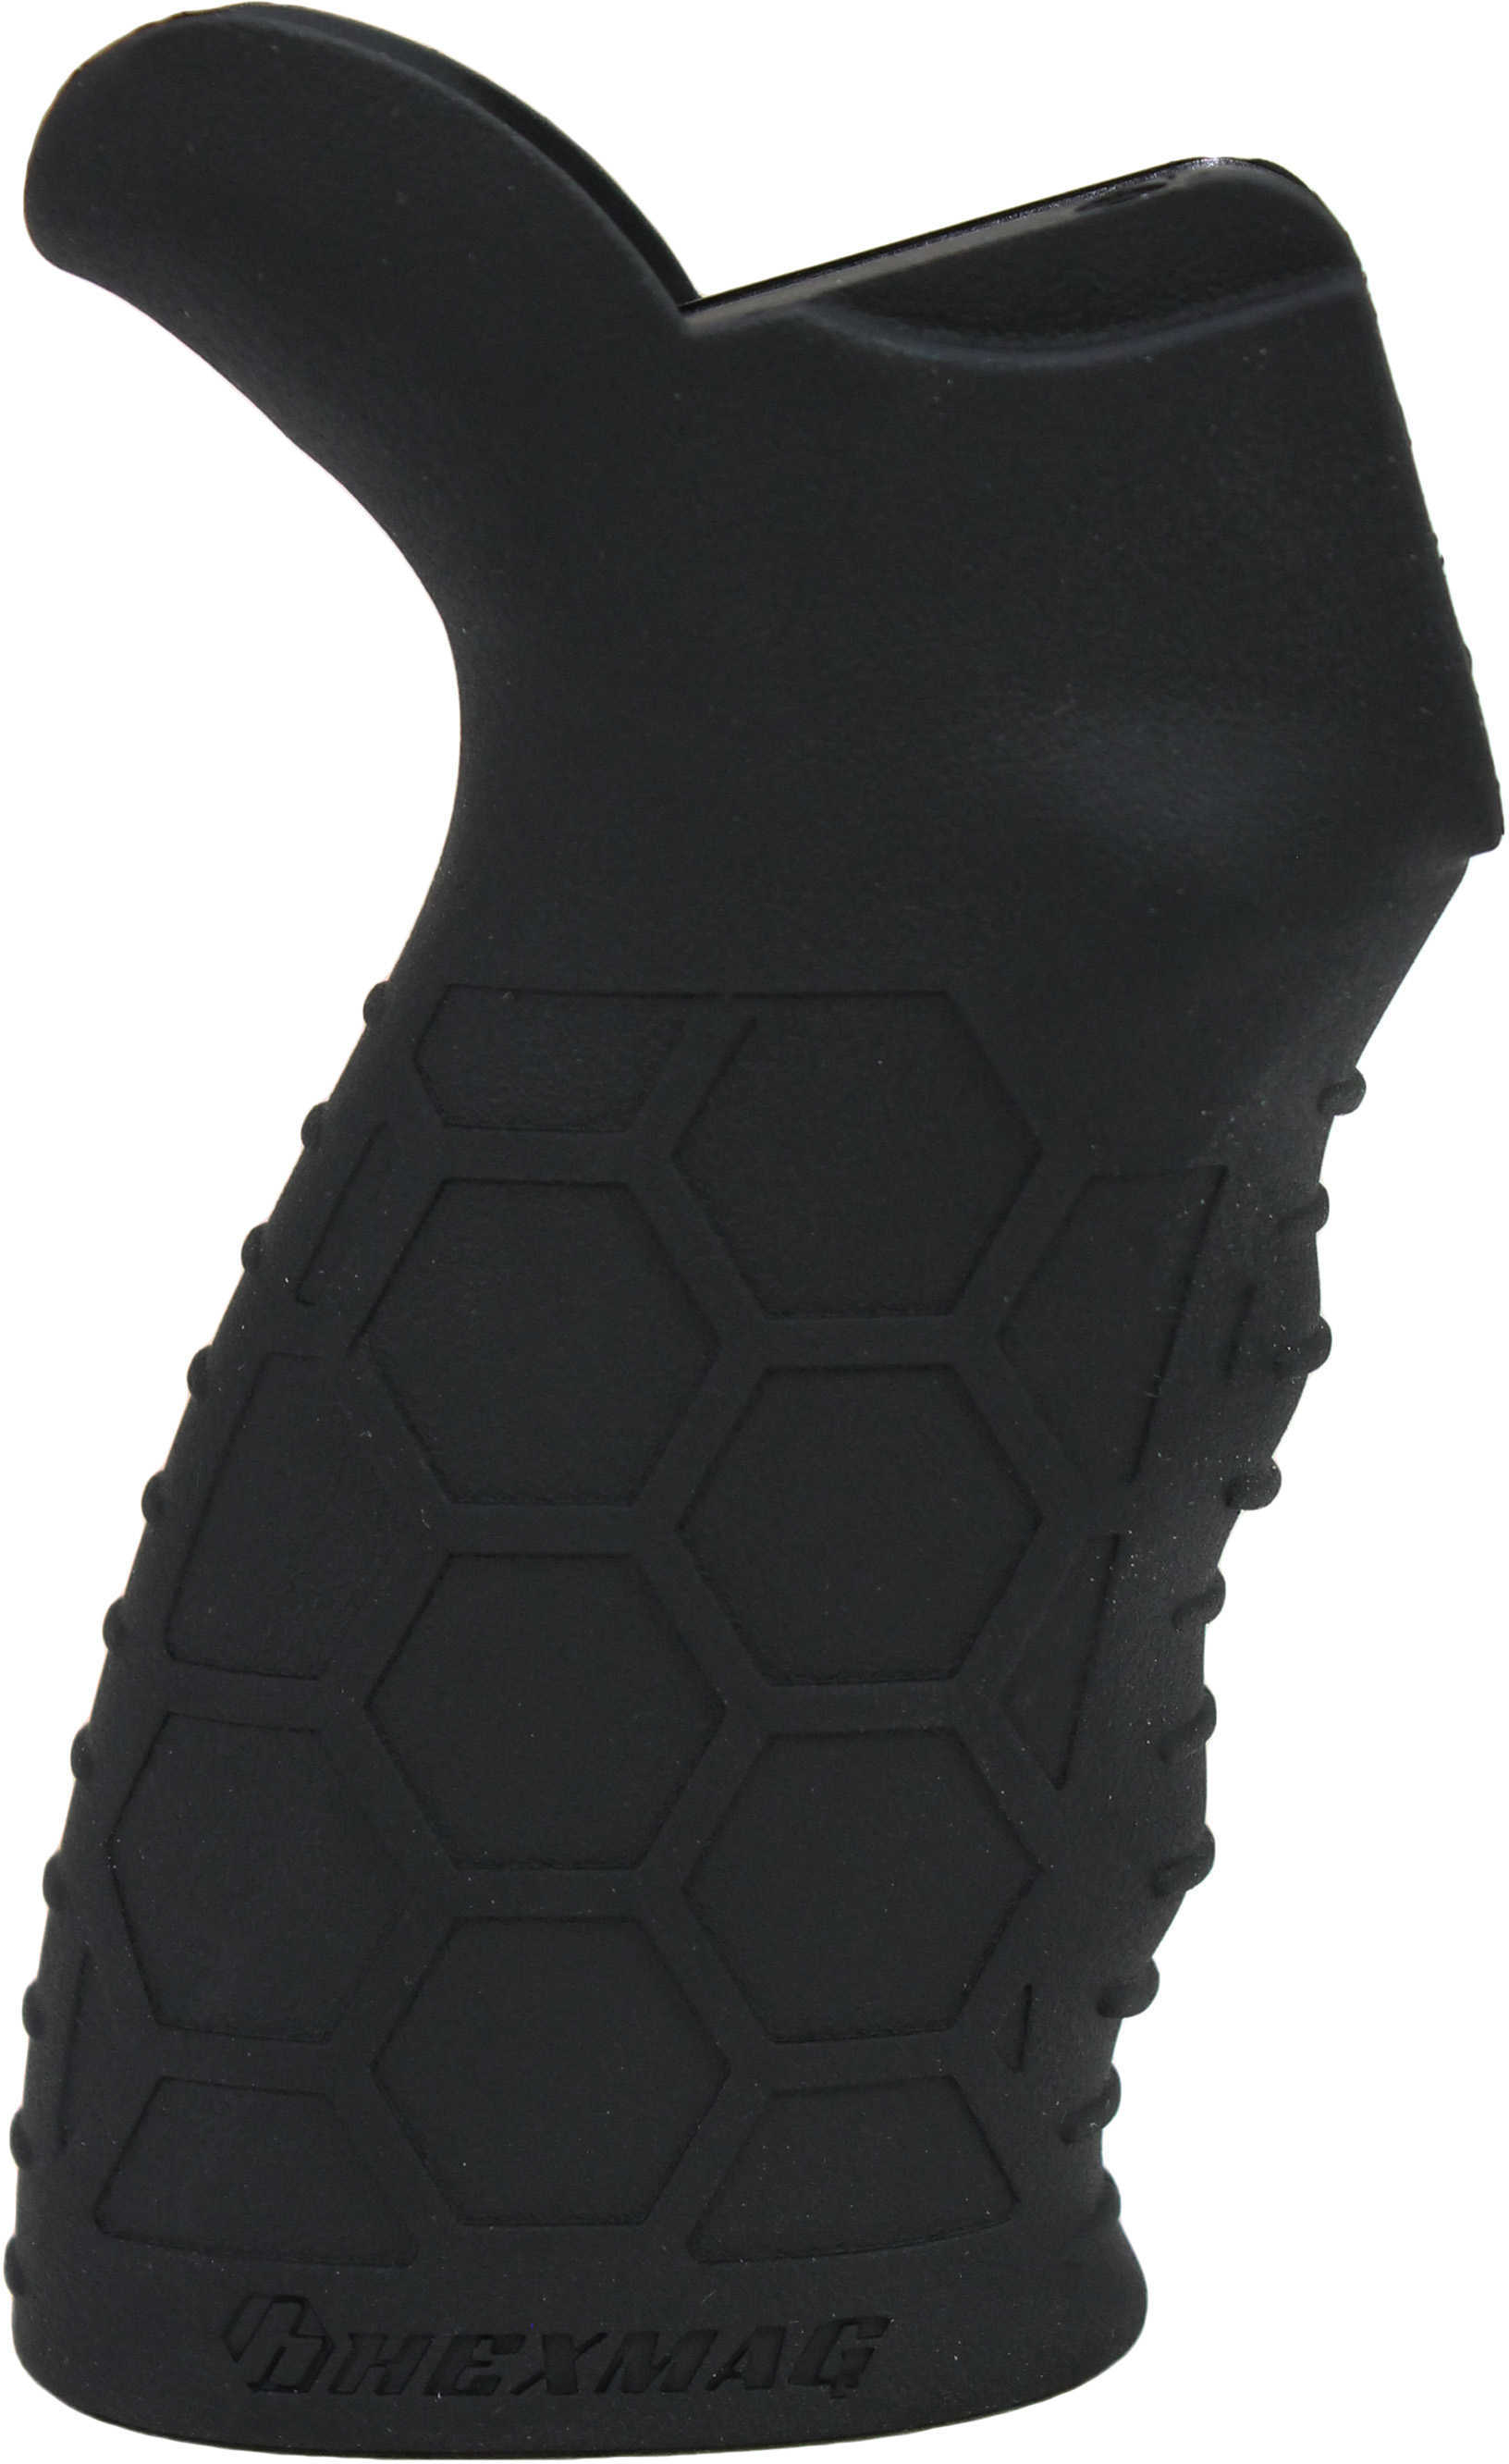 HEXMAG Tactical Rubber Grip Fits AR-15 Black HX-HTG-BLK